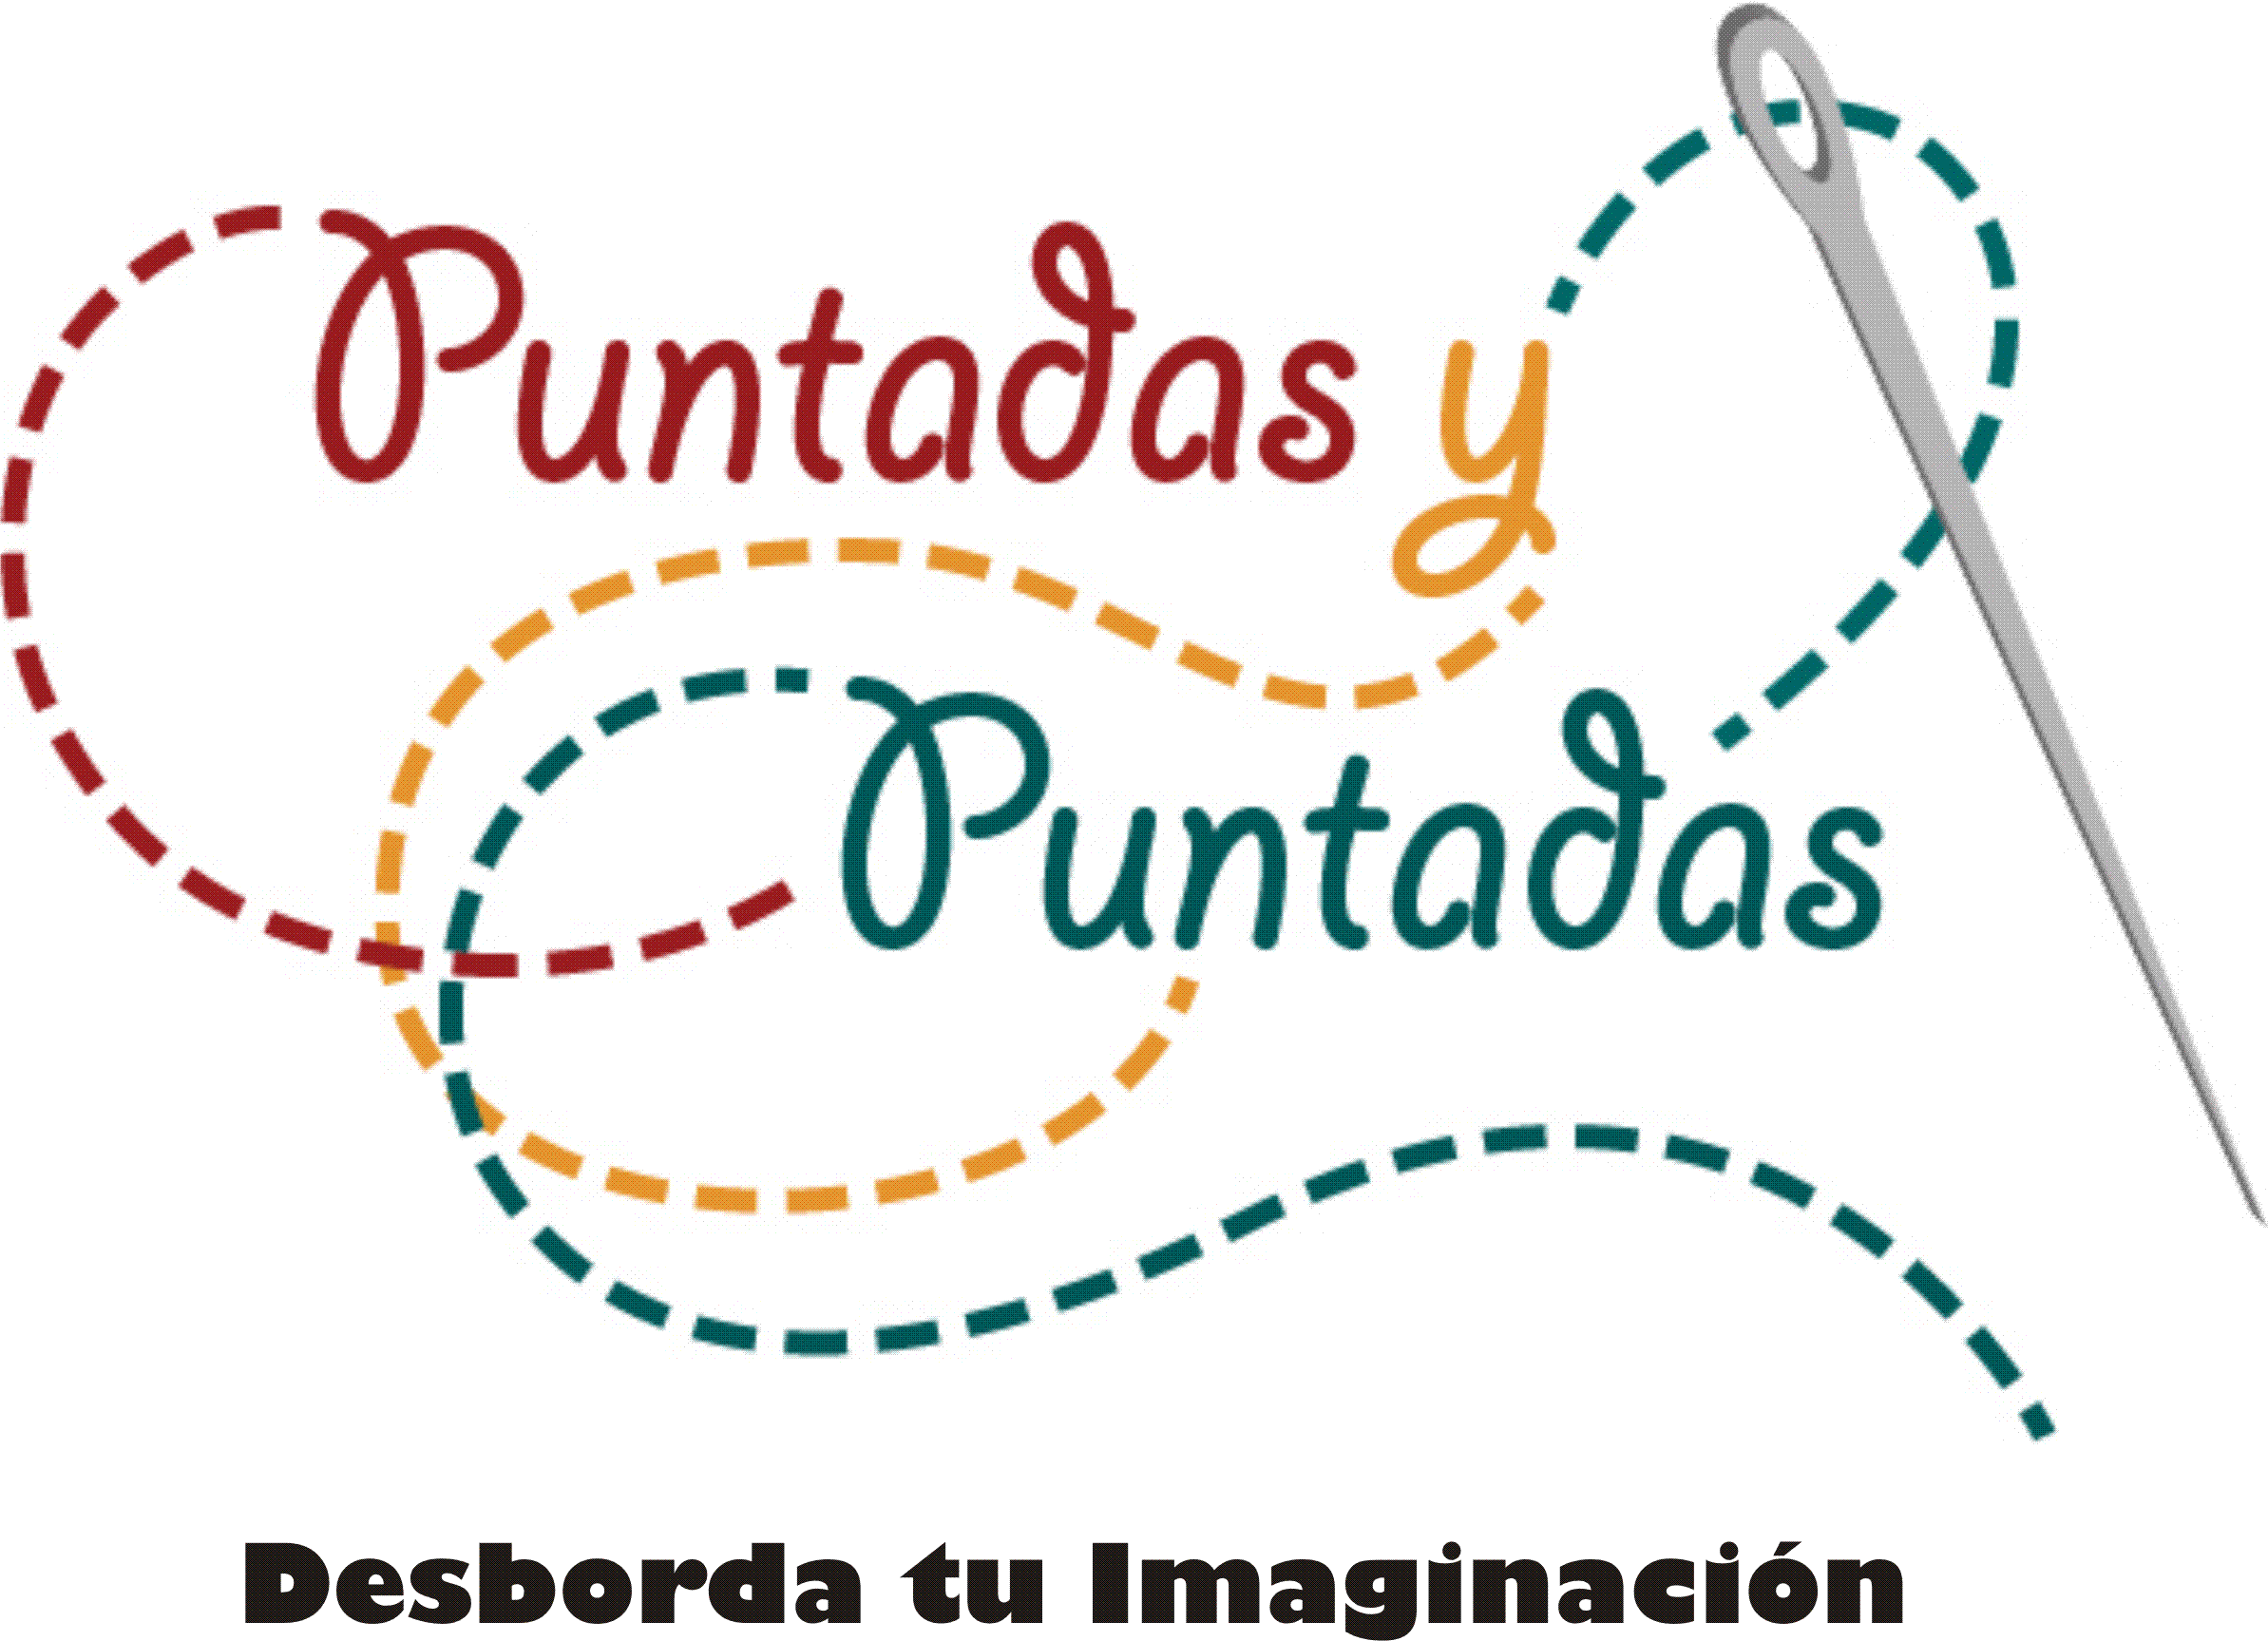 Playeras Cancún by Puntadas y Puntadas. Teléfonos: 998 848 0625 y 998 880 57559